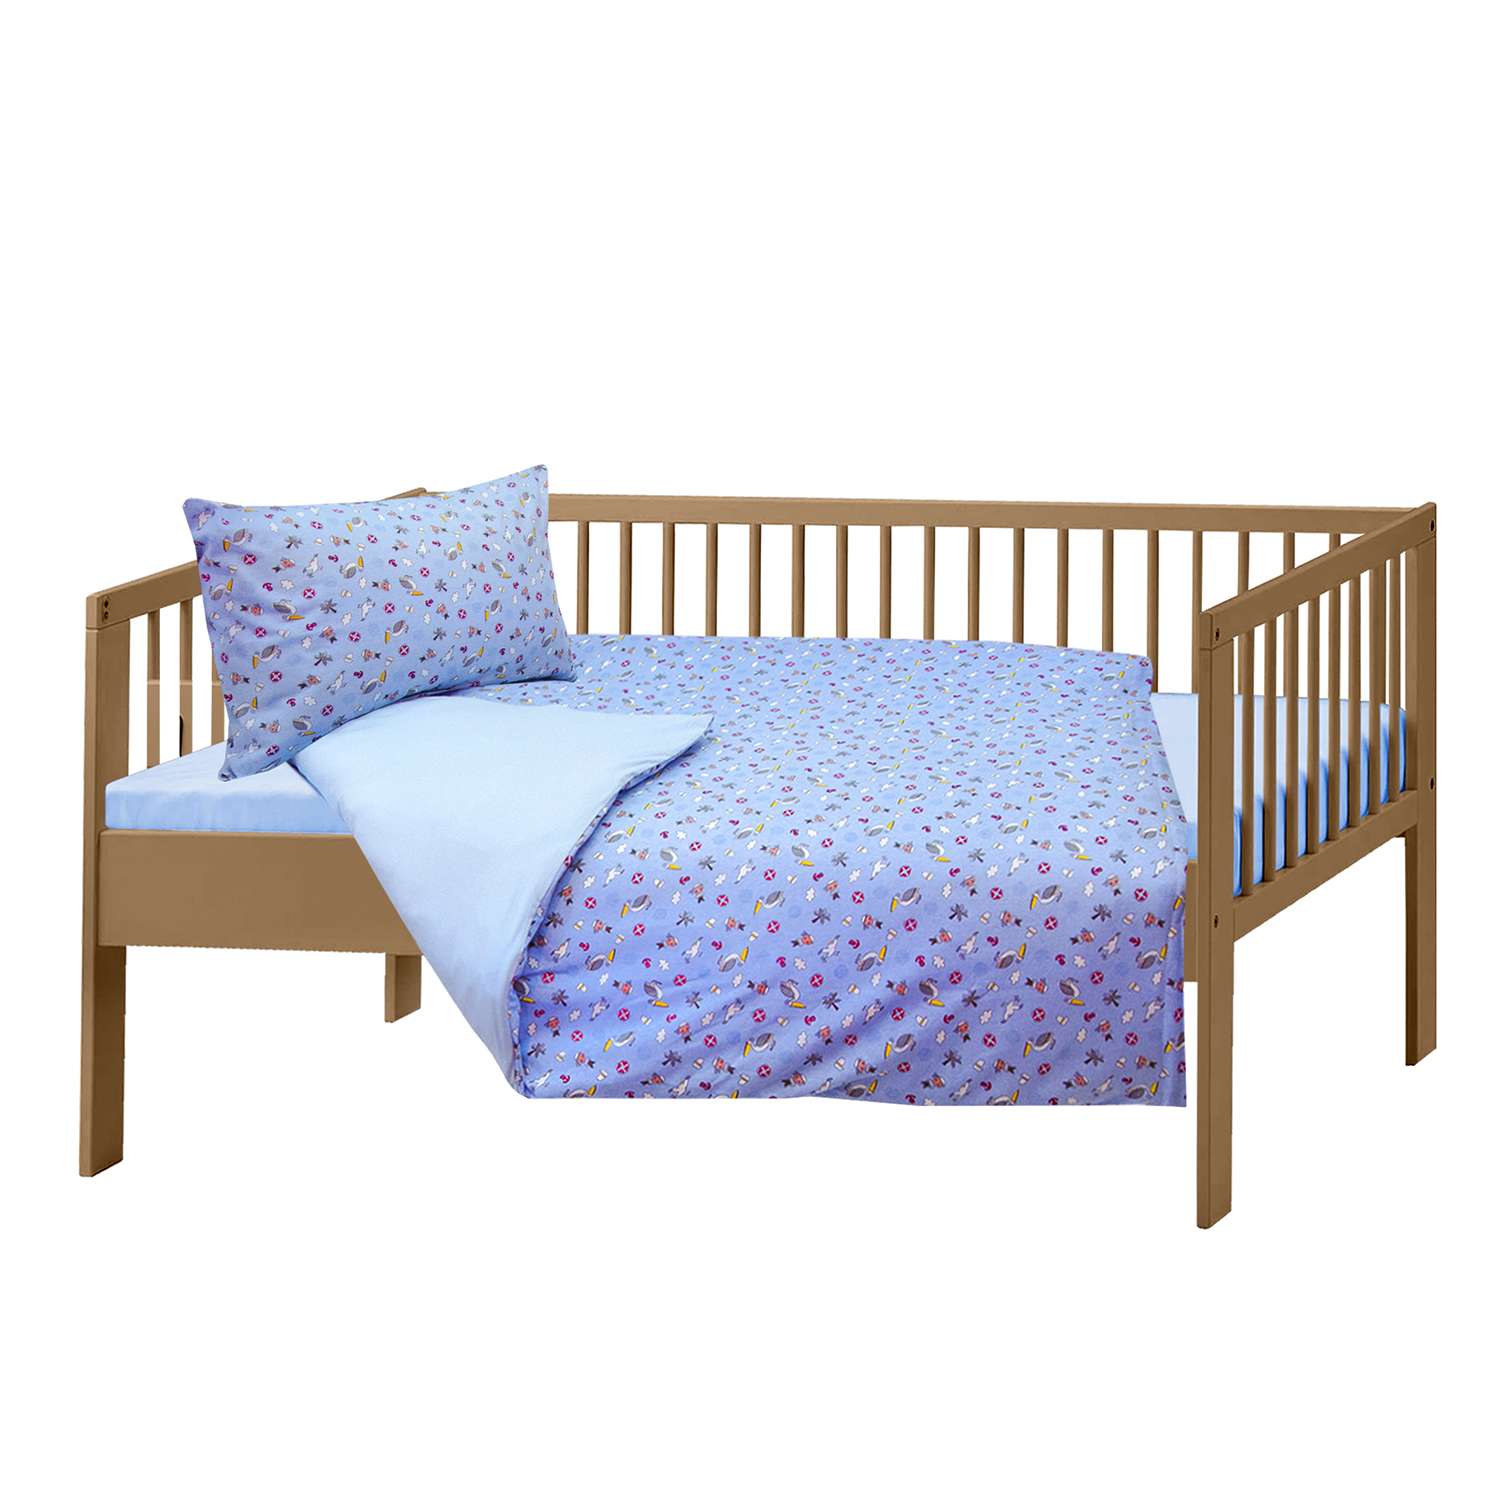 Комплект OLTEX постельного белья Голубой - фото 1